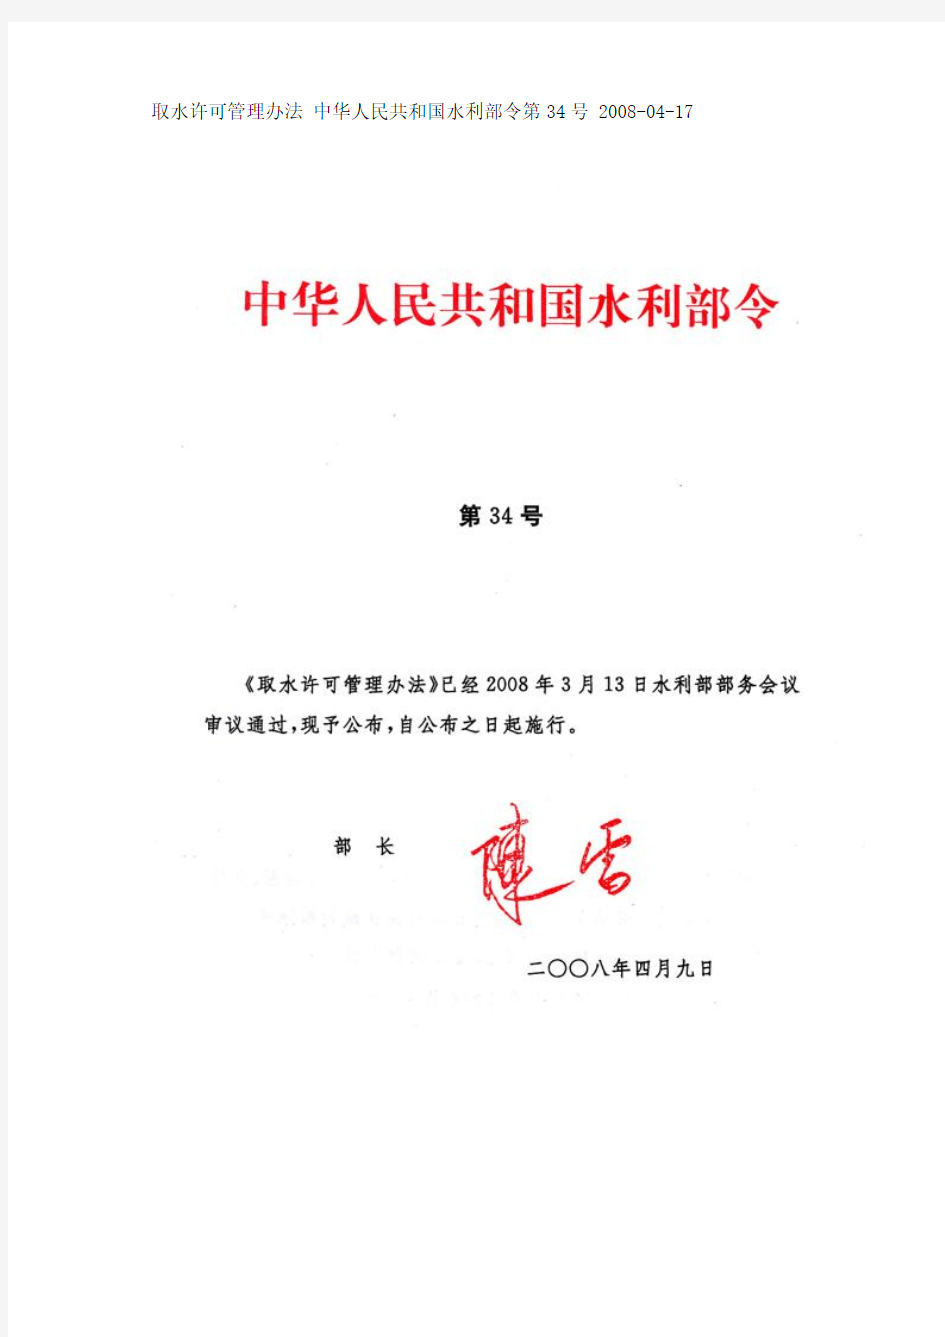 取水许可管理办法 中华人民共和国水利部令第34号 2008